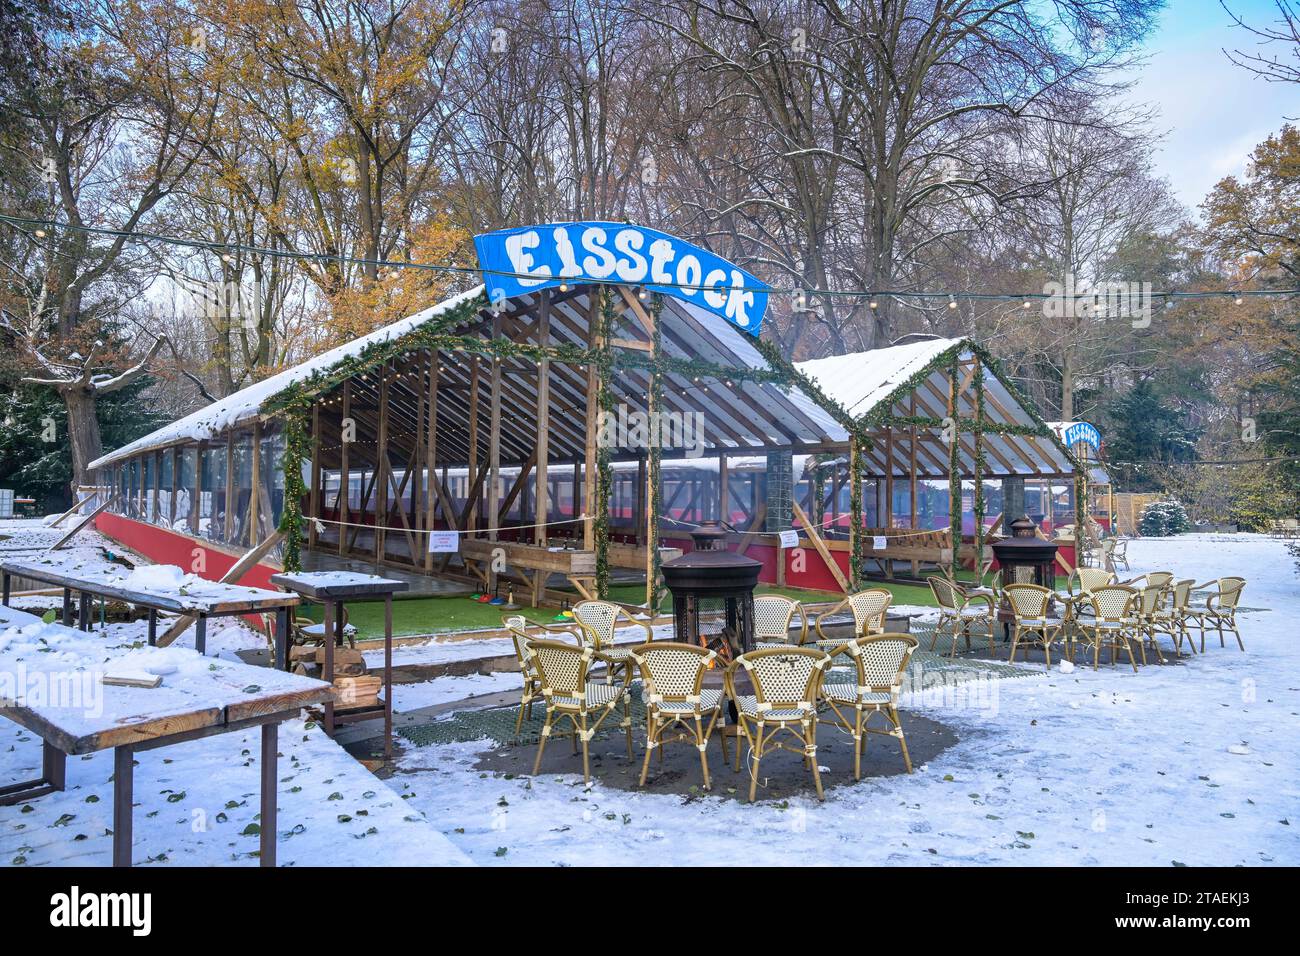 Eisstock Anlage, Café am Neuen See, Winter, Schnee, Park, Großer Tiergarten, Tiergarten, Mitte, Berlin, Deutschland Stock Photo